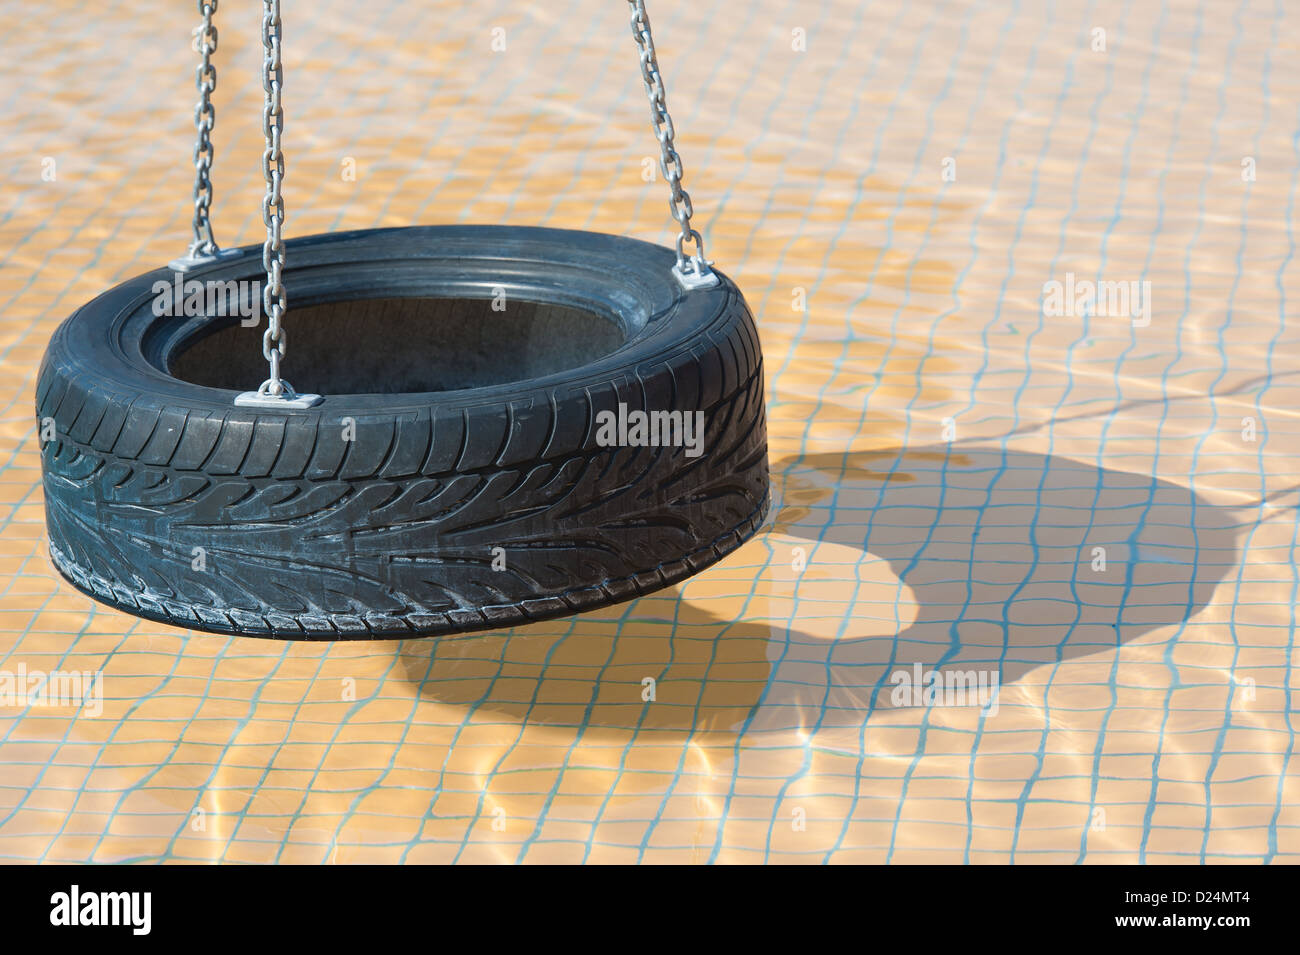 Image abstraite de balançoire pneu avec ombre dans l'eau peu profonde d'une piscine pour enfants Banque D'Images